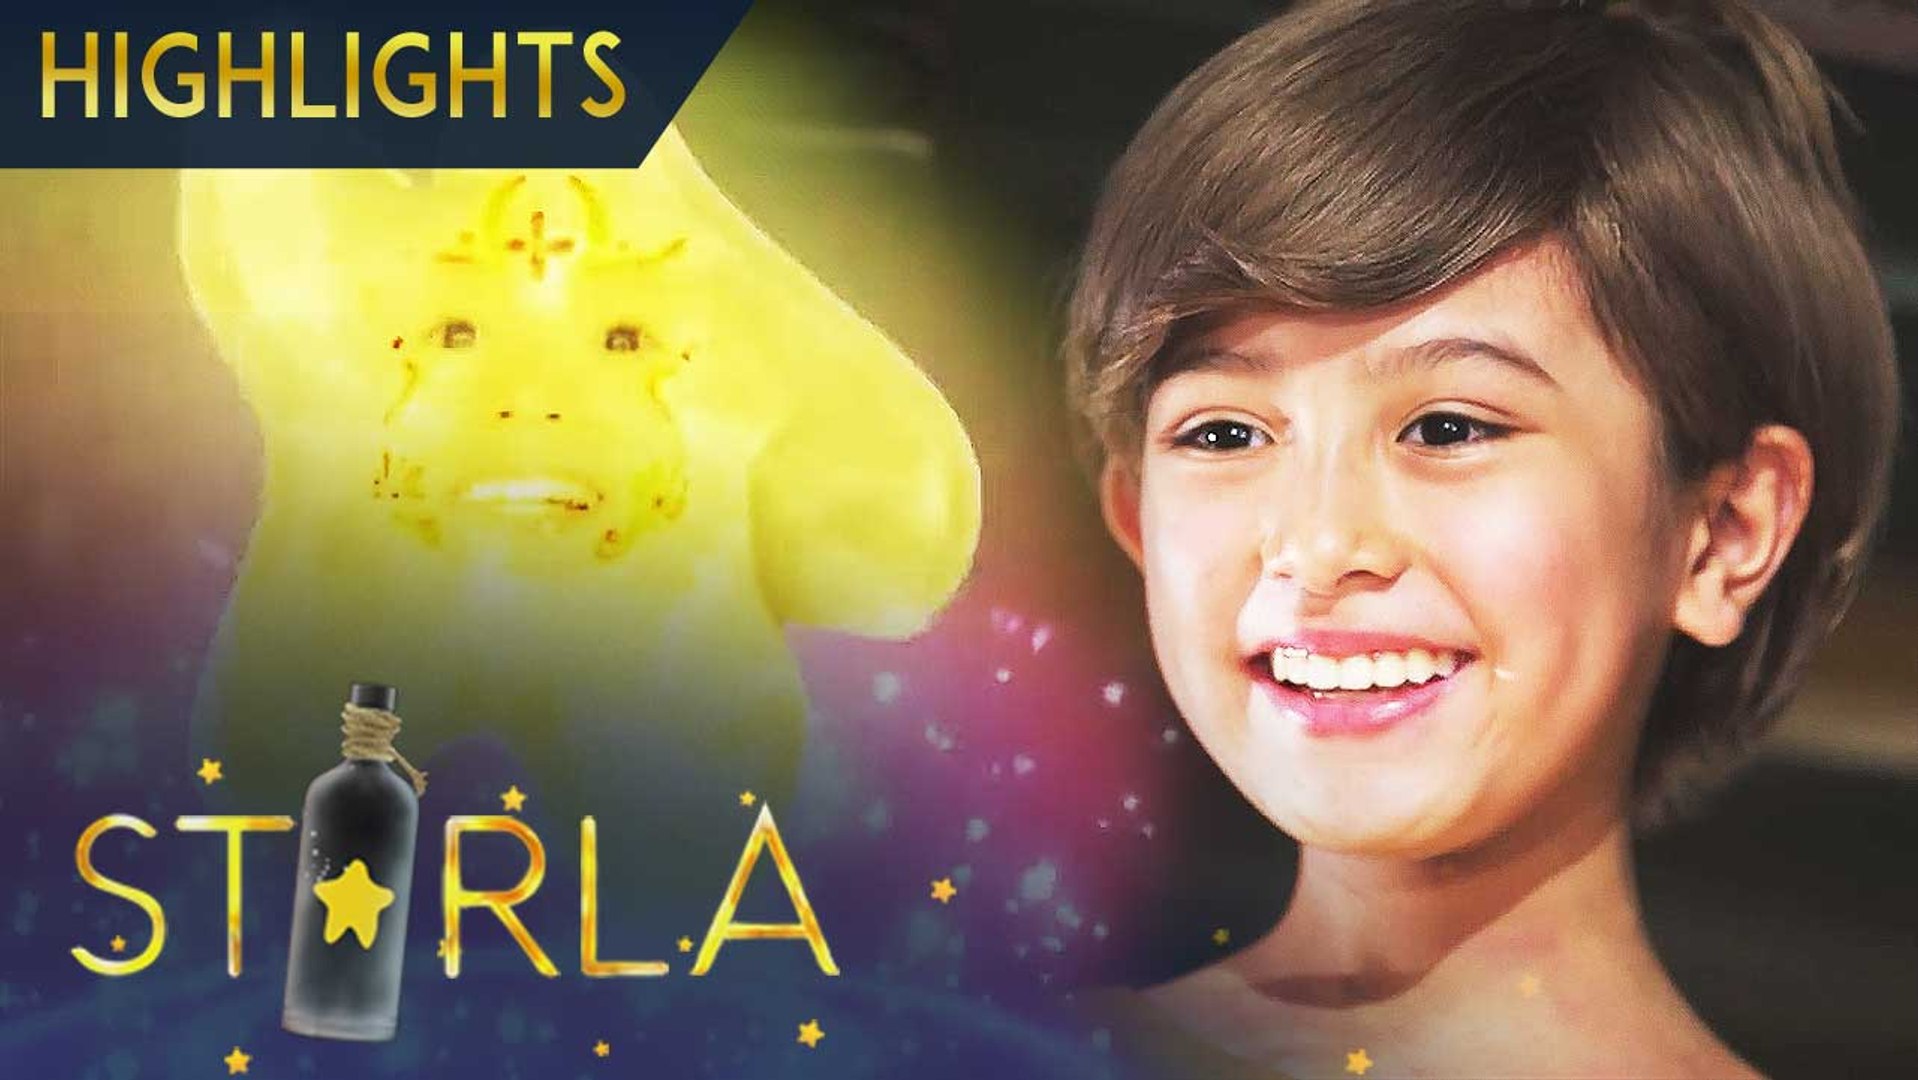 Starla transforms into a human | Starla